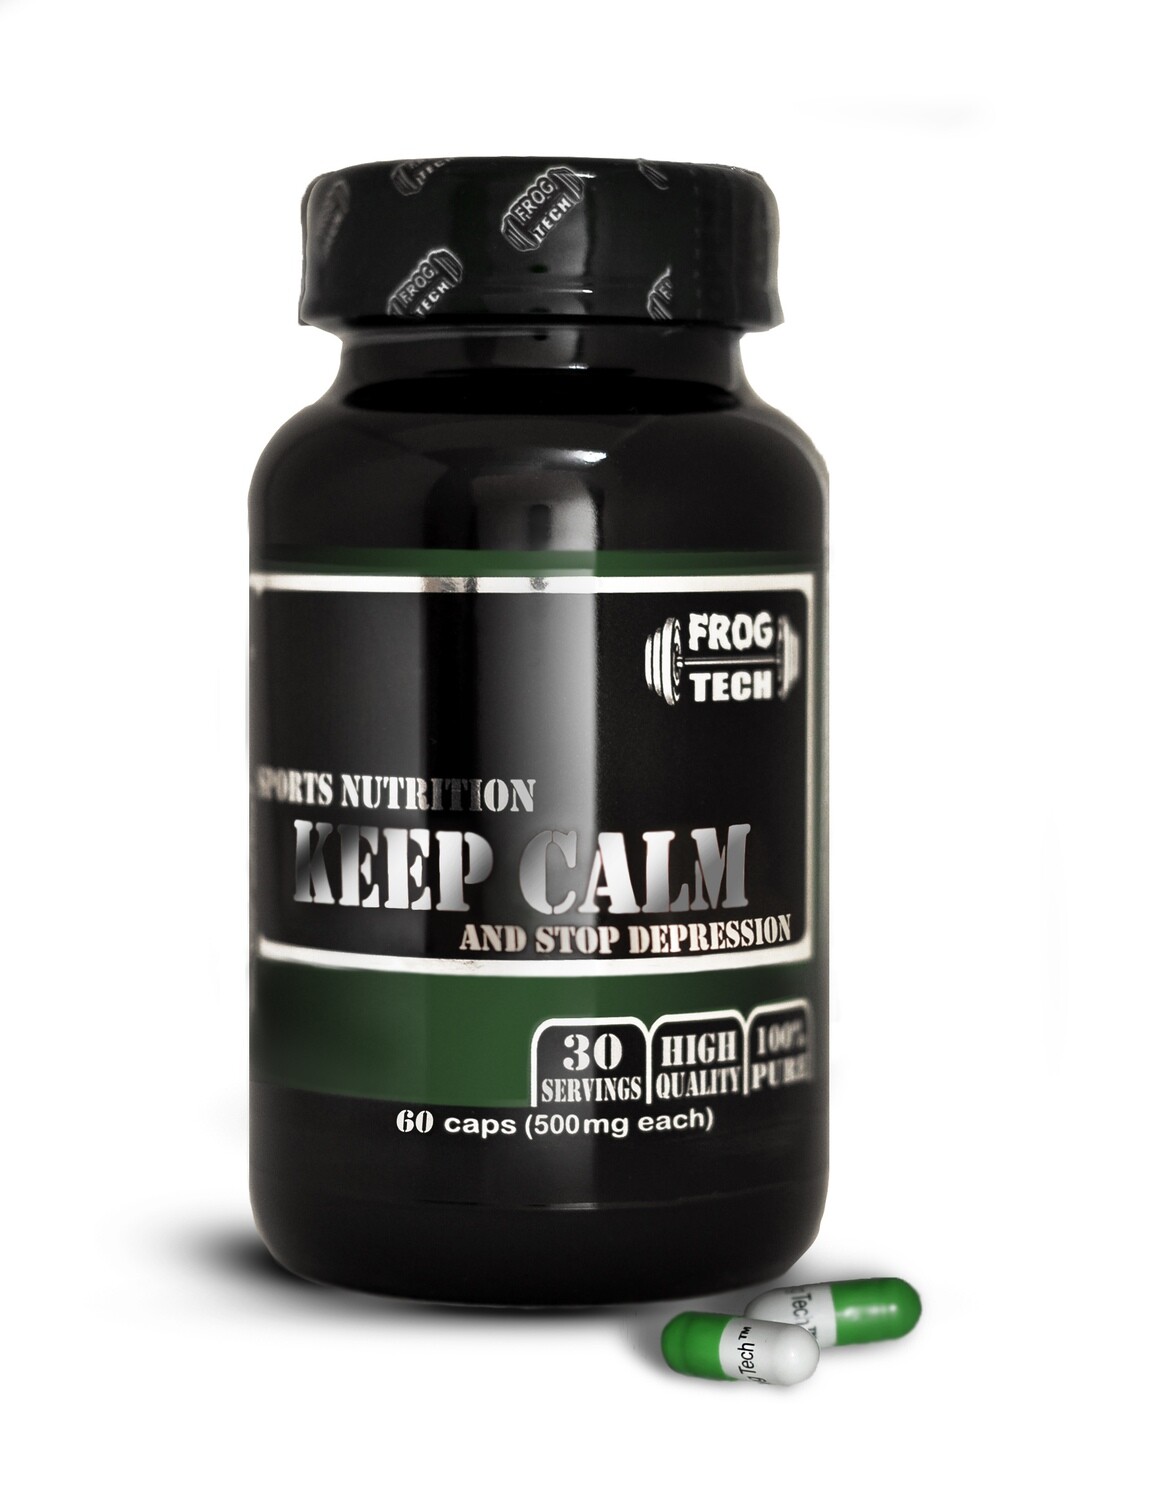 Keep Calm and Stop Depression 60 капсул - экстракт валерьяны, 5хтп, магний - мощный антидепрессант купить